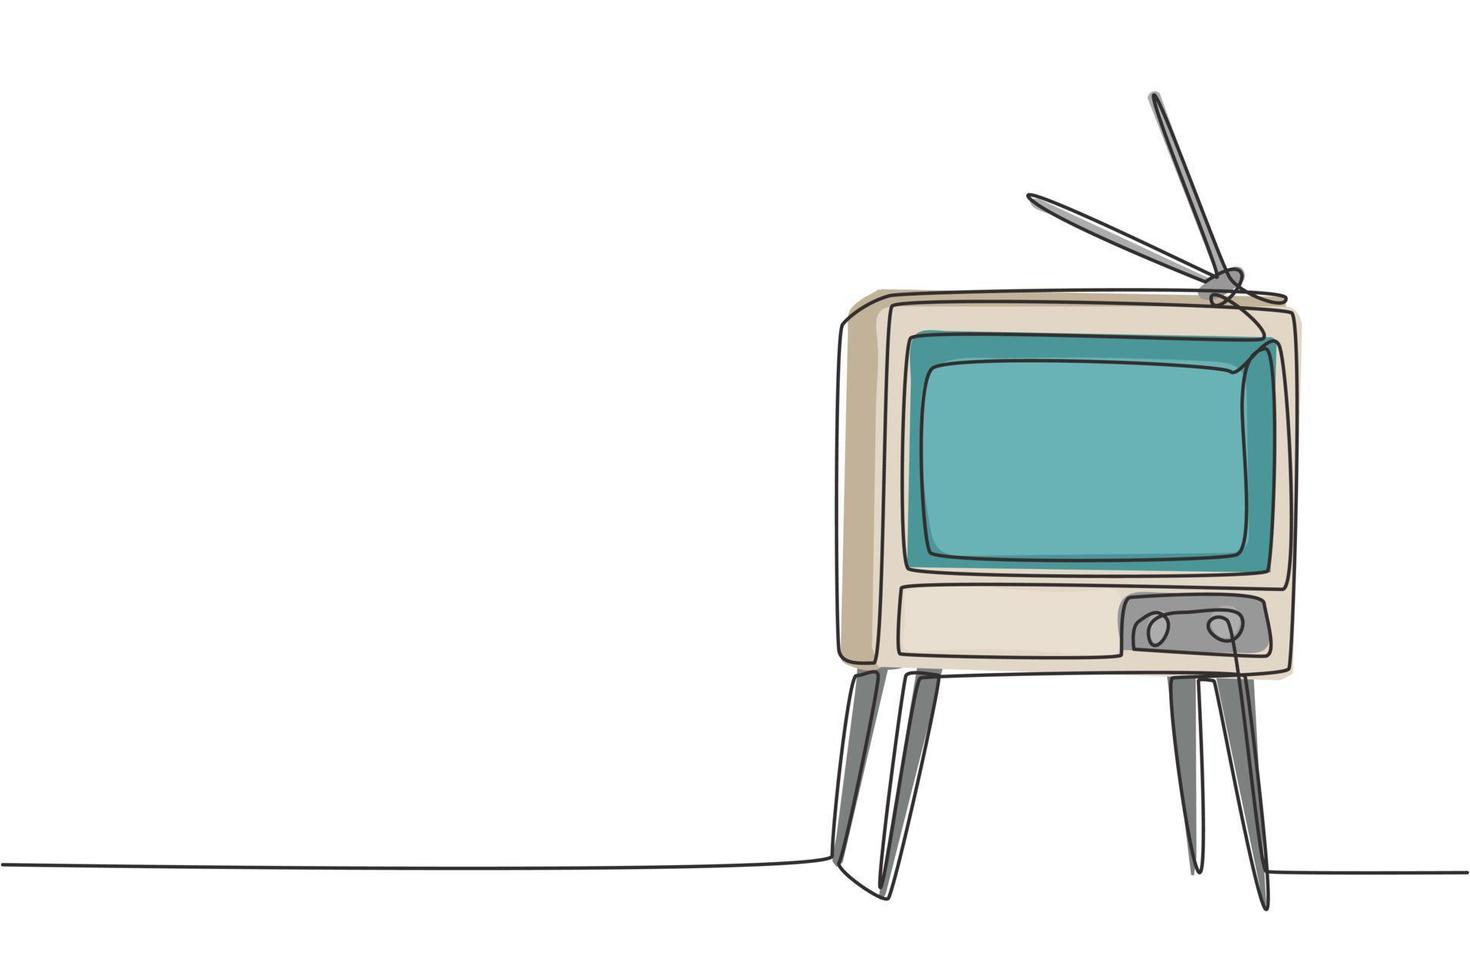 Eine durchgehende Strichzeichnung eines altmodischen Retro-Fernsehers mit Holztisch und Tischbeinen. Klassisches Vintage-Analog-Fernsehkonzept Single-Line-Draw-Design-Grafik-Vektor-Illustration vektor